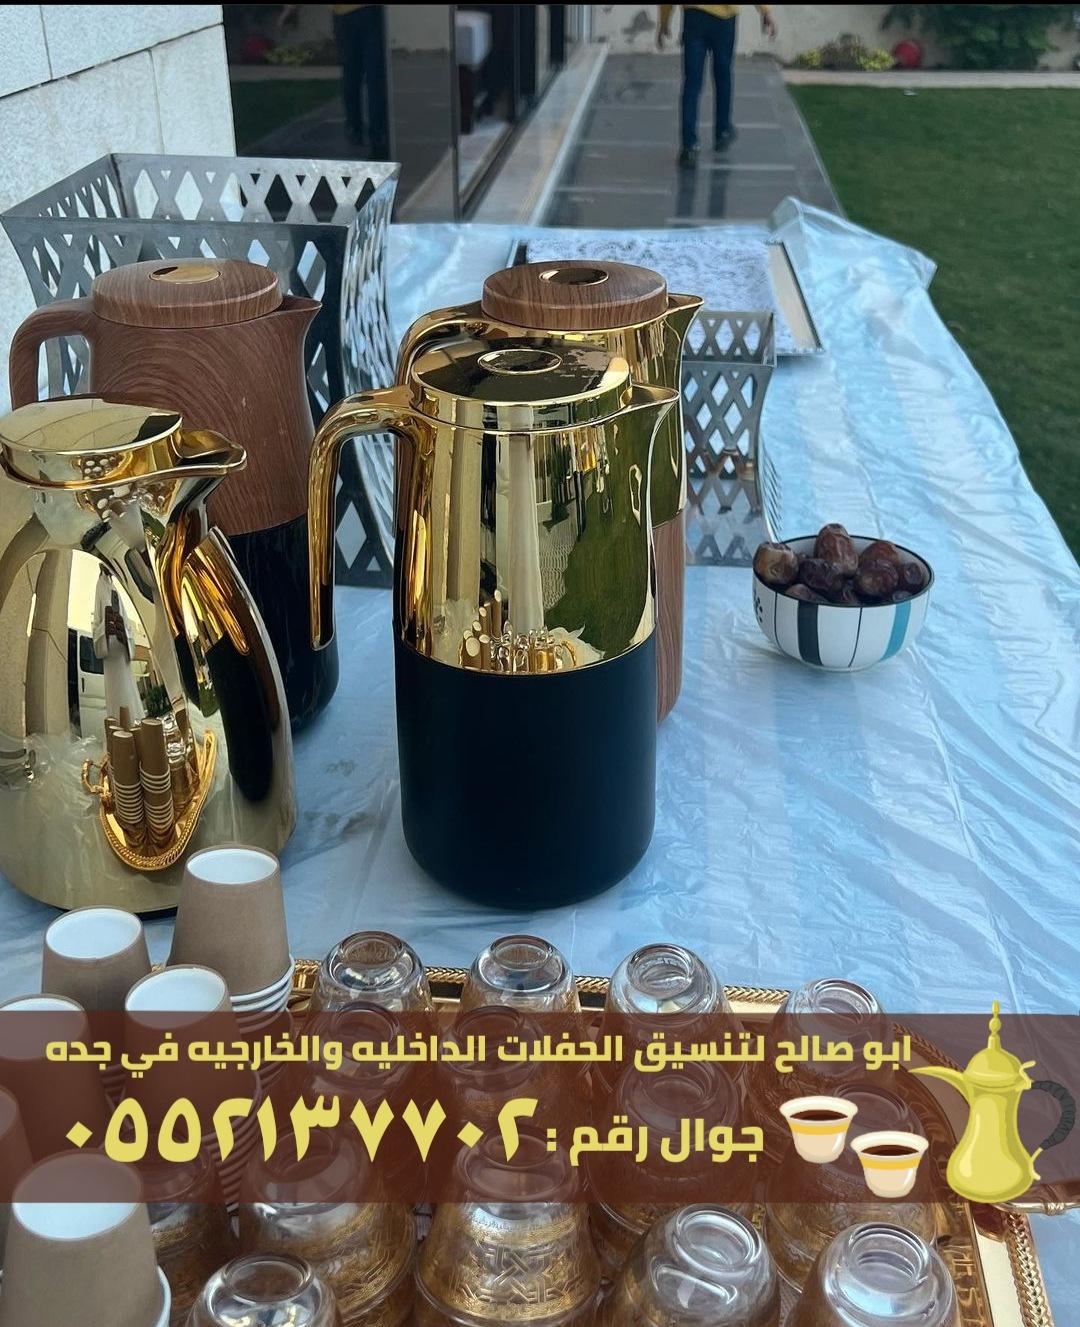 صبابين قهوة في جدة صبابات قهوه بجده,0552137702 381010025